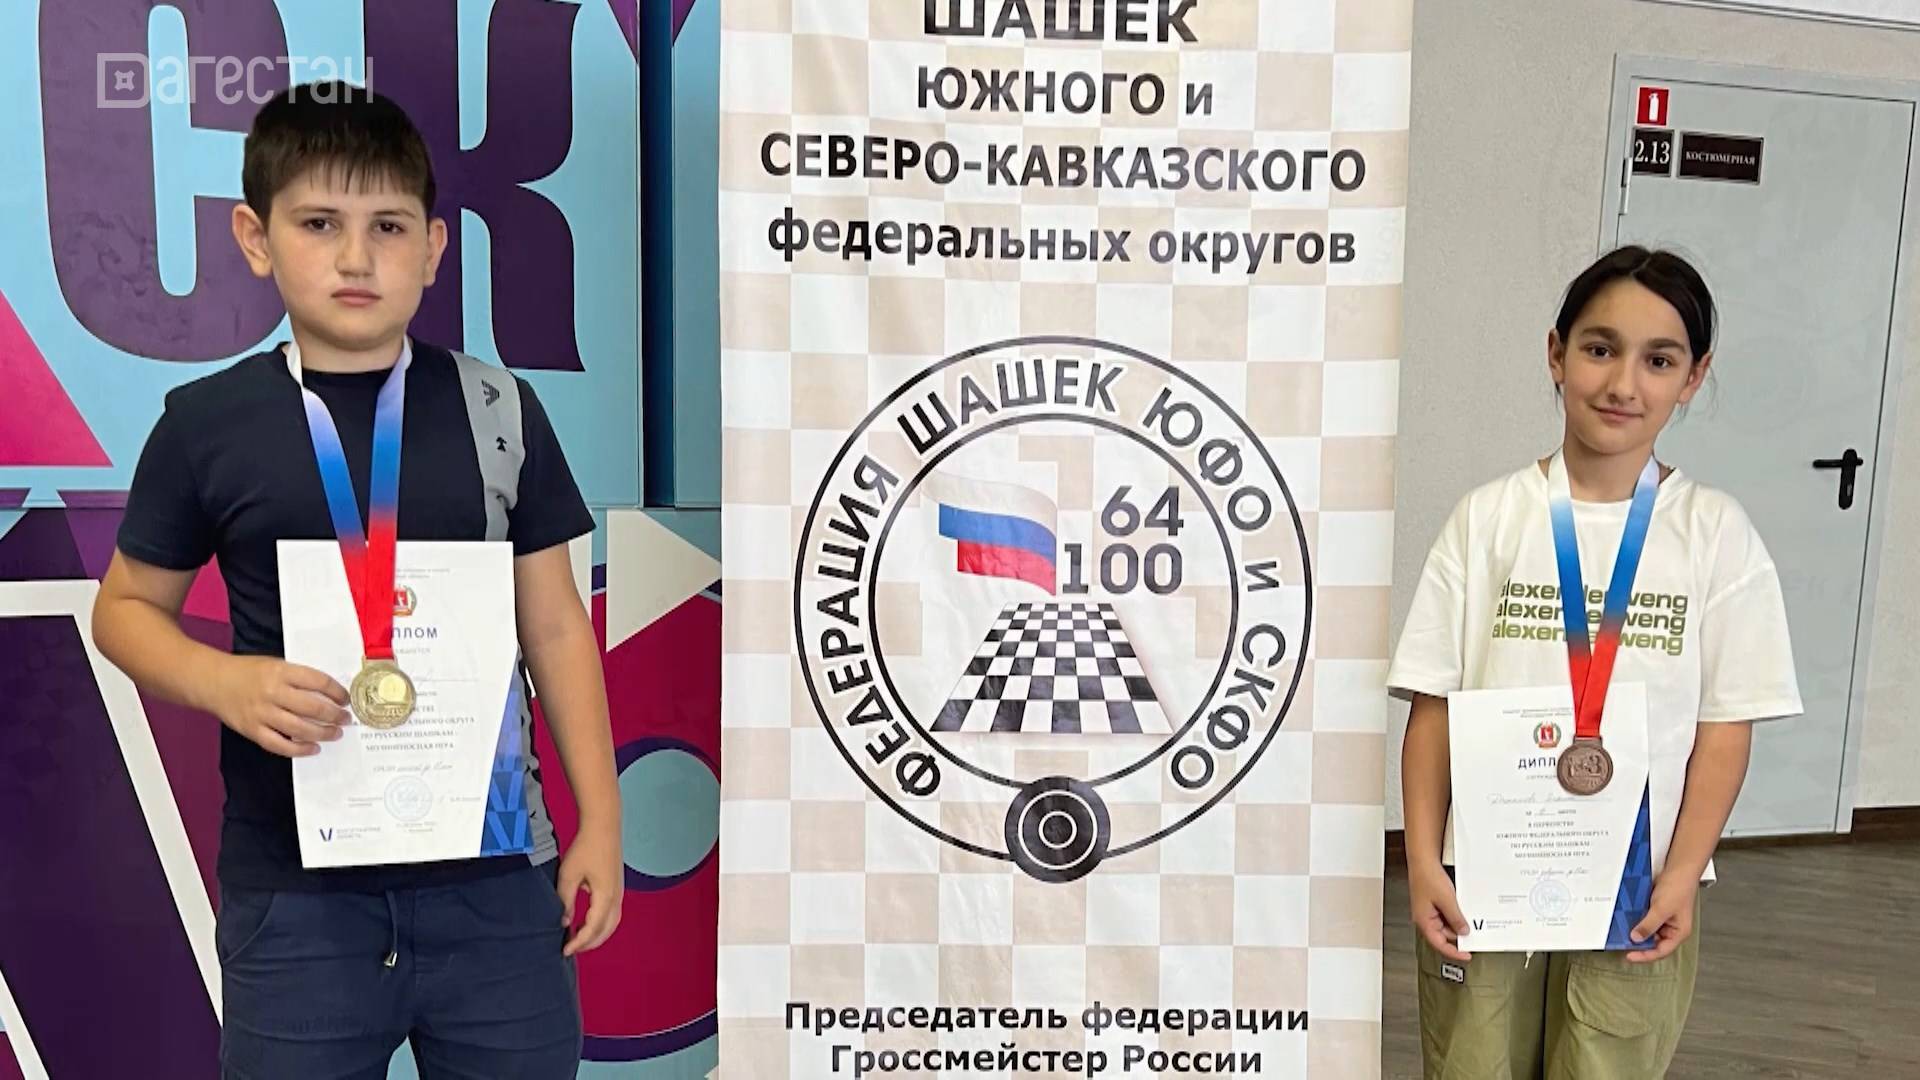 В Волжском завершаются чемпионат и первенство ЮФО и СКФО по русским шашкам